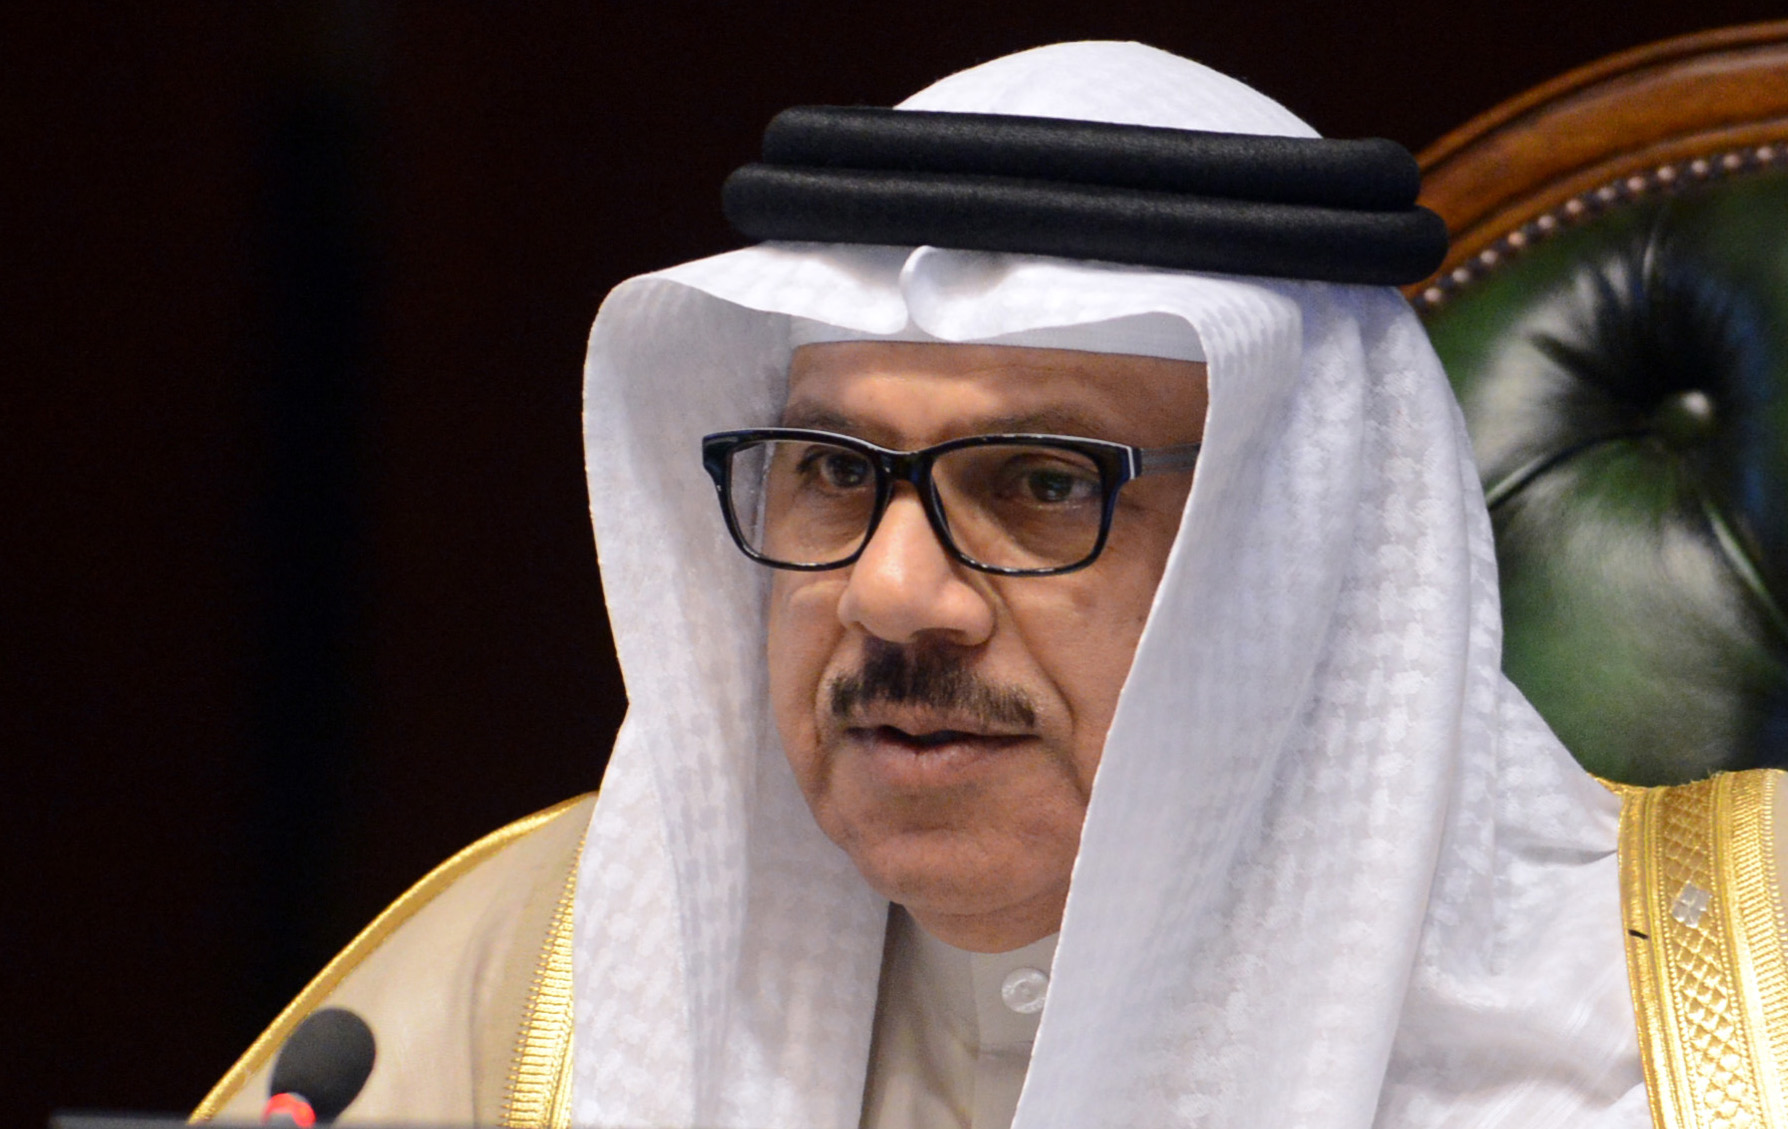 Secretary-General of the Gulf Cooperation Council (GCC) Dr. Abdullatif Al-Zayani